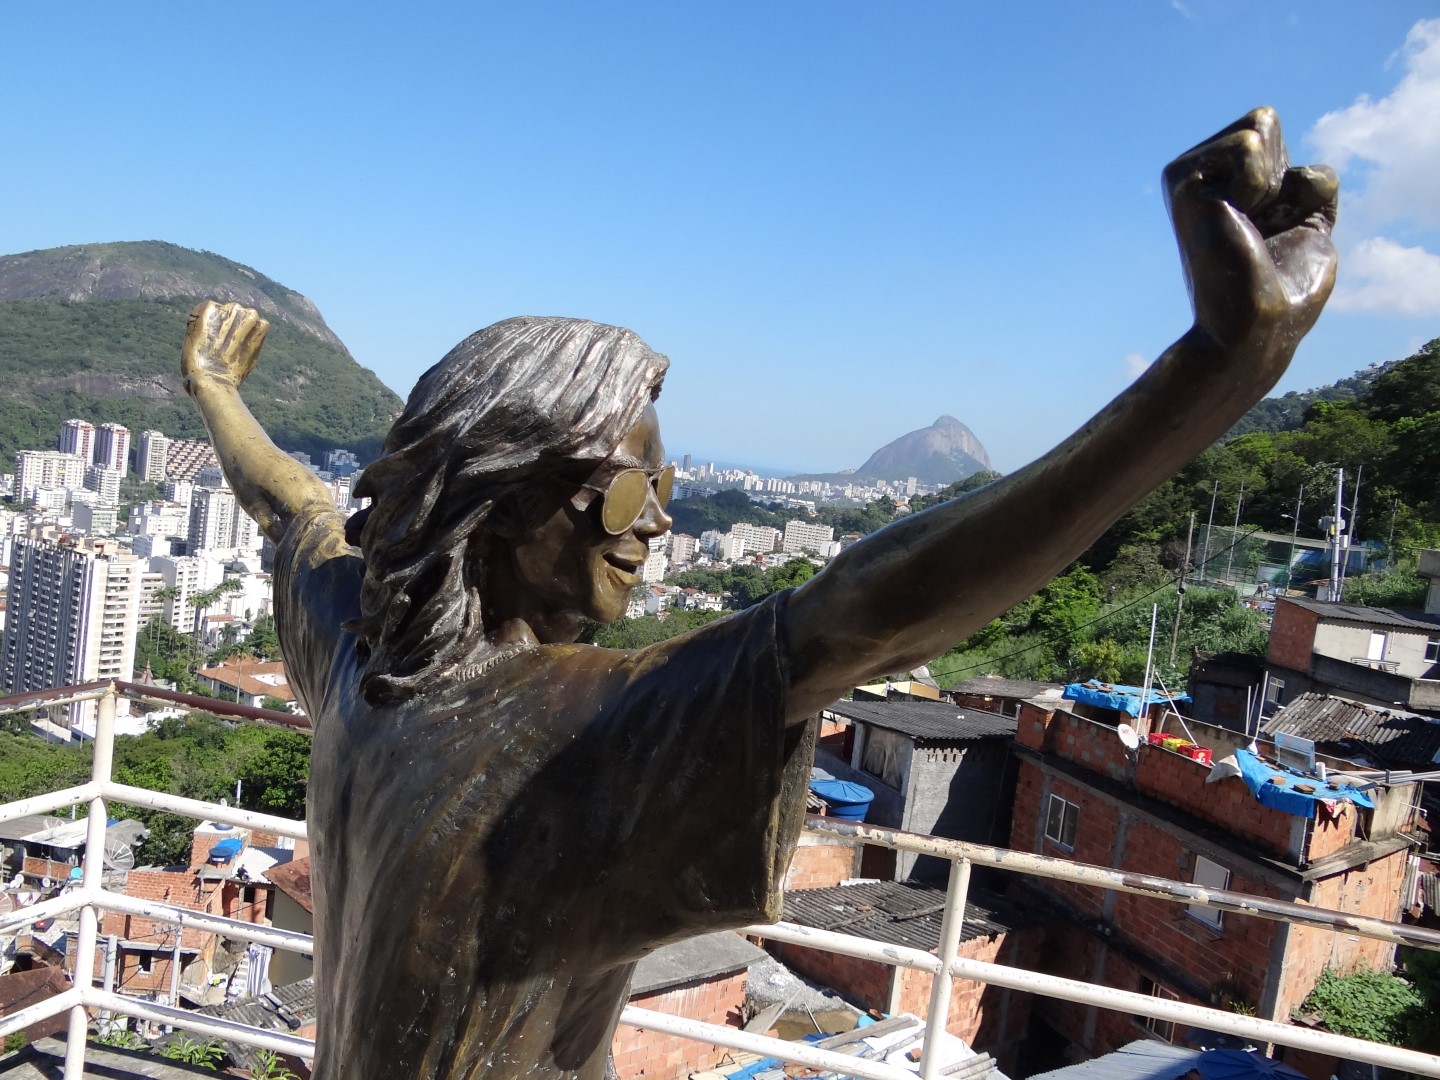 Rio de Janeiro e seus lugares imperdíveis e secretos